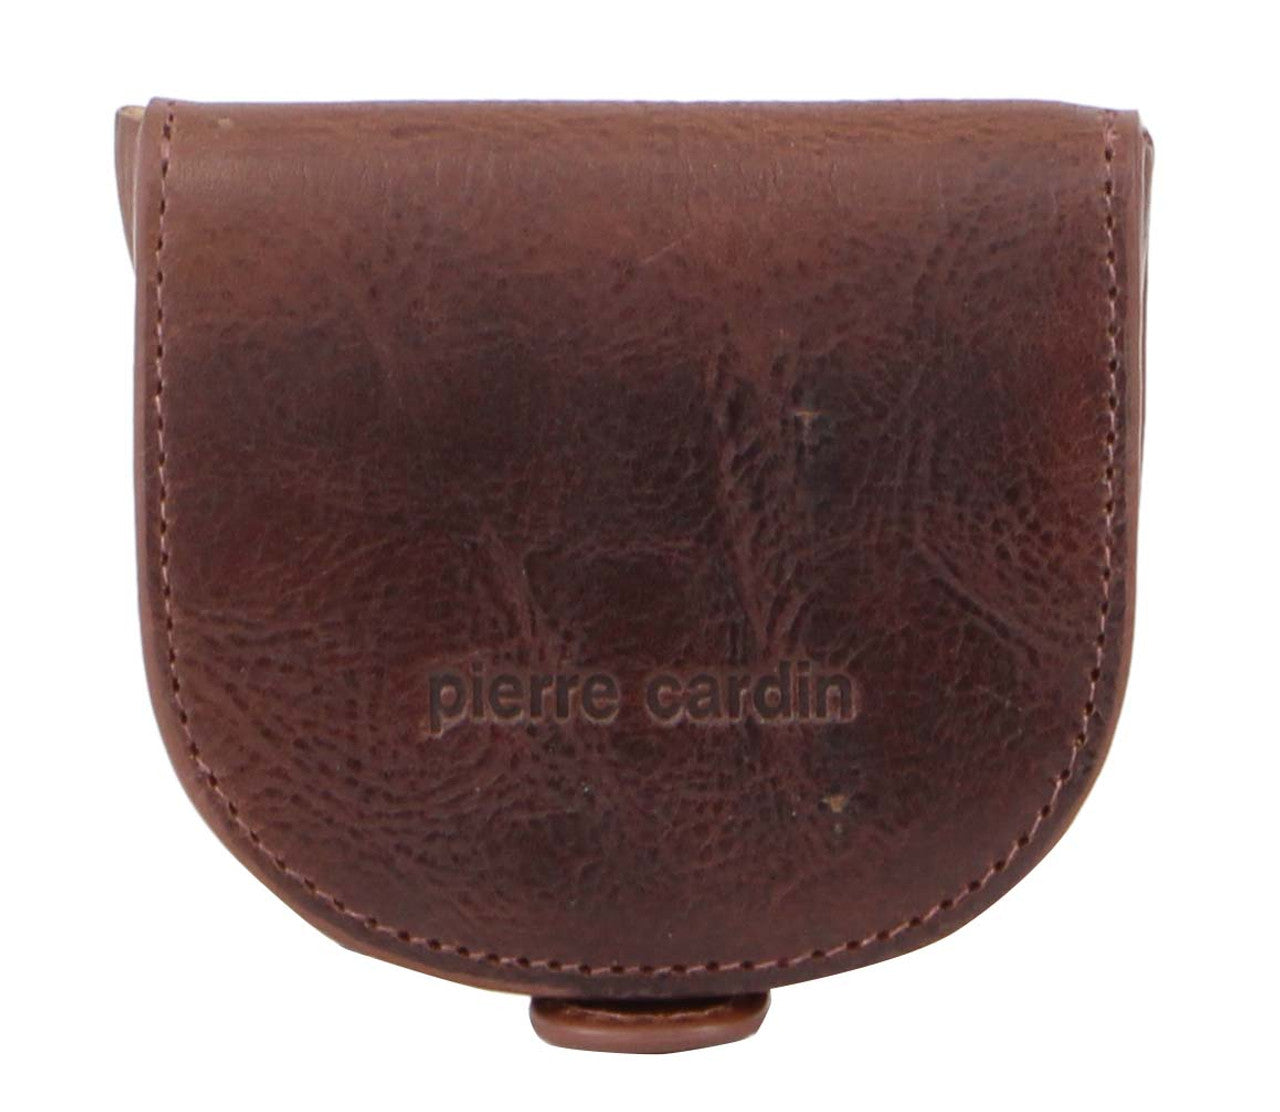 Pierre Cardin PC10315 Cognac Leather Coin-Purse